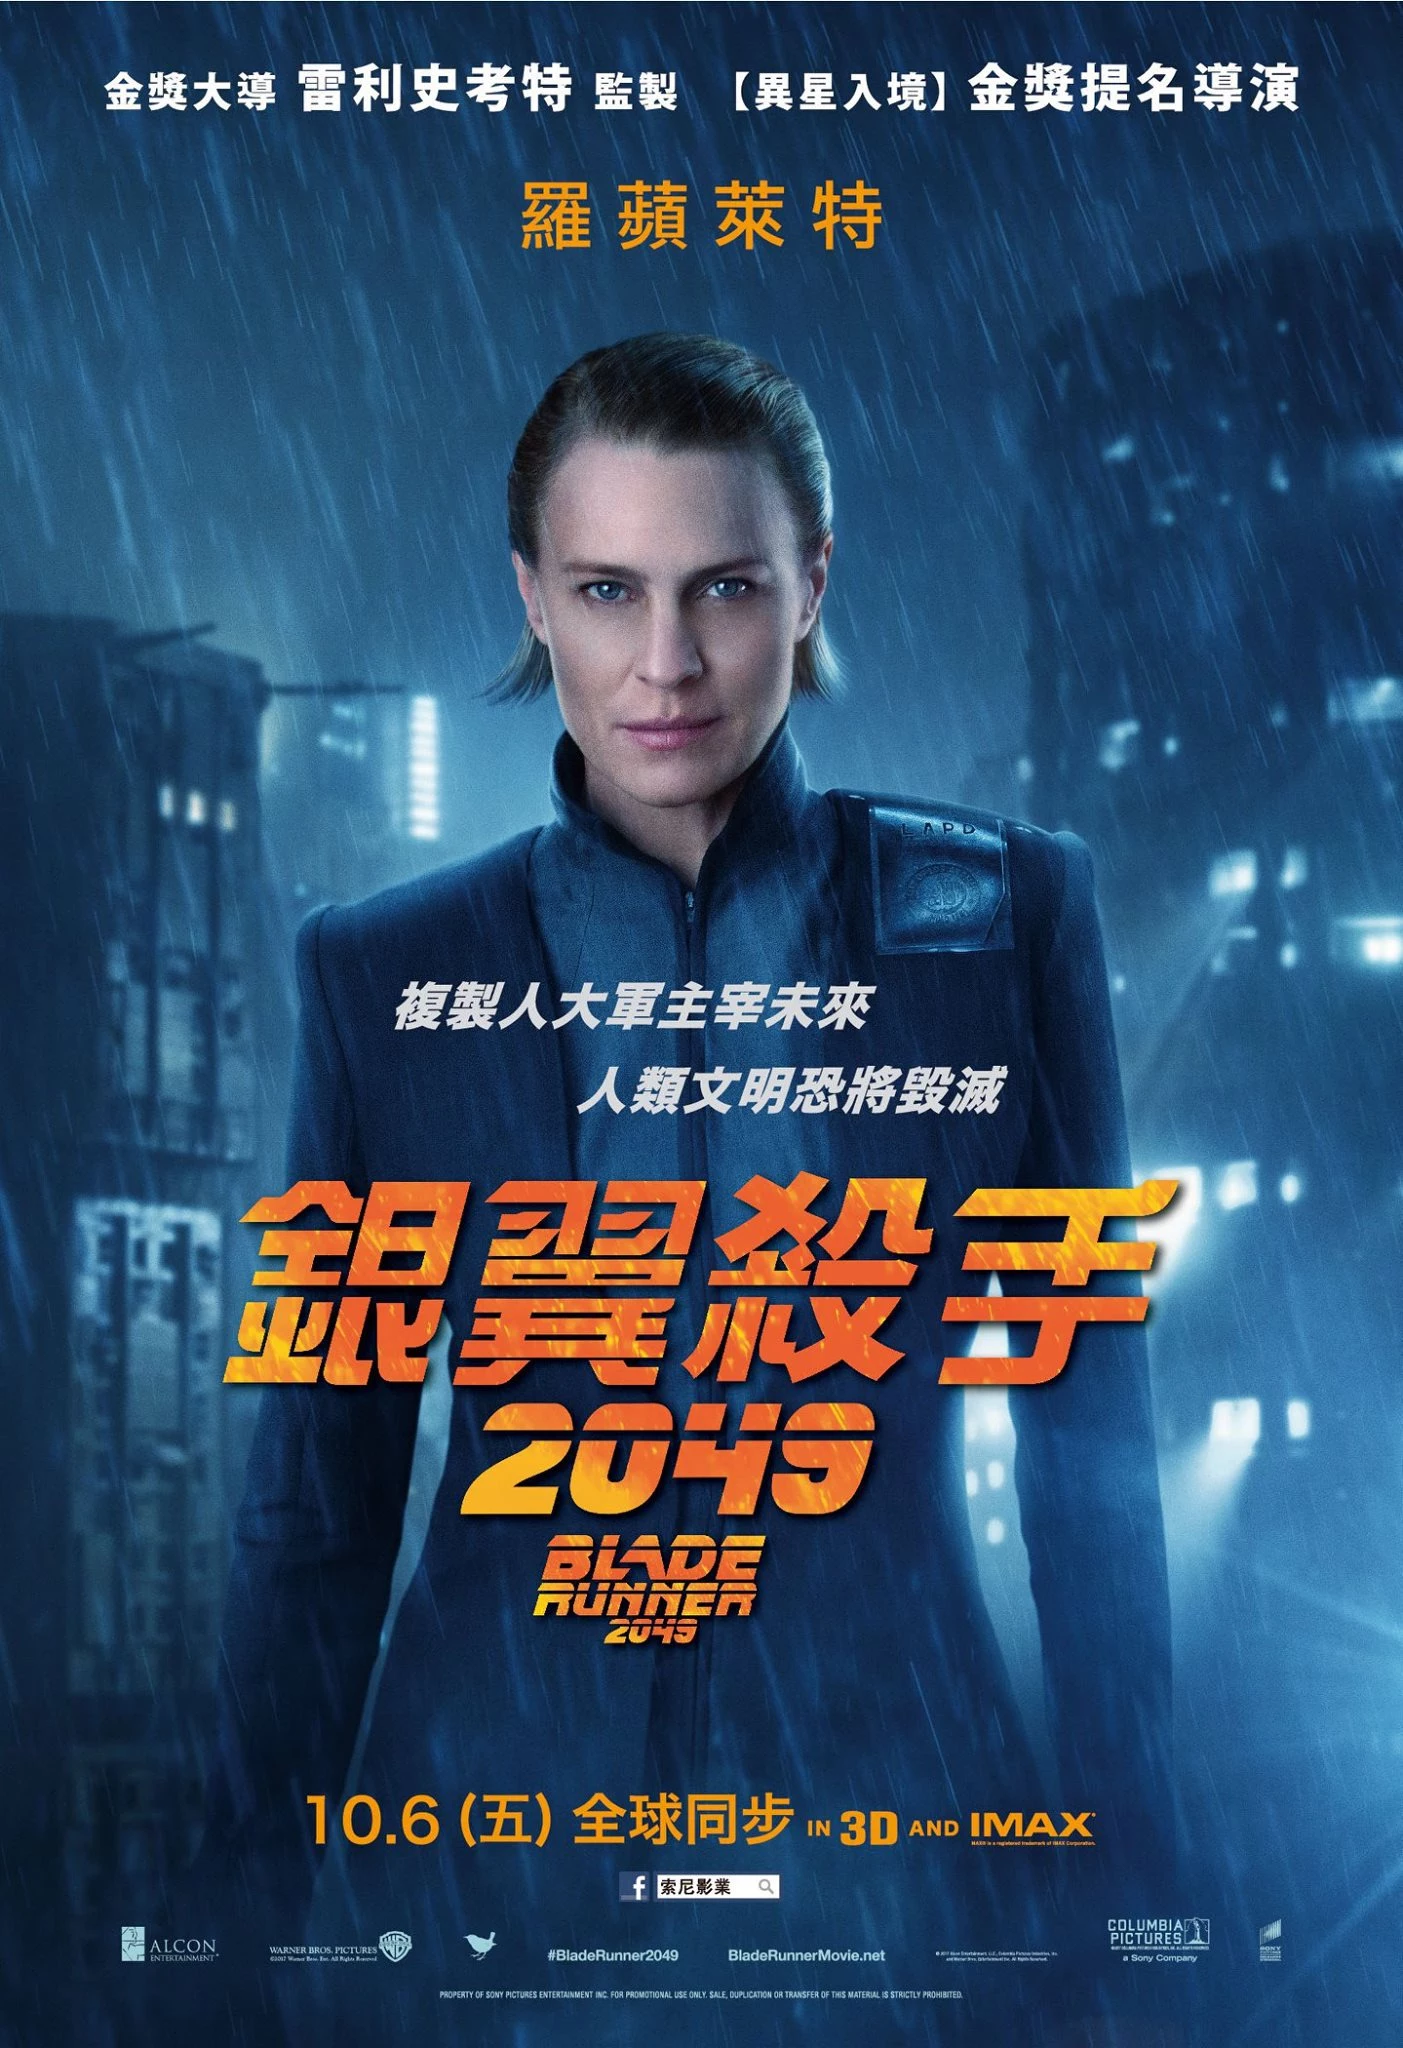 blade-runner-2049-poster-seoebseoof